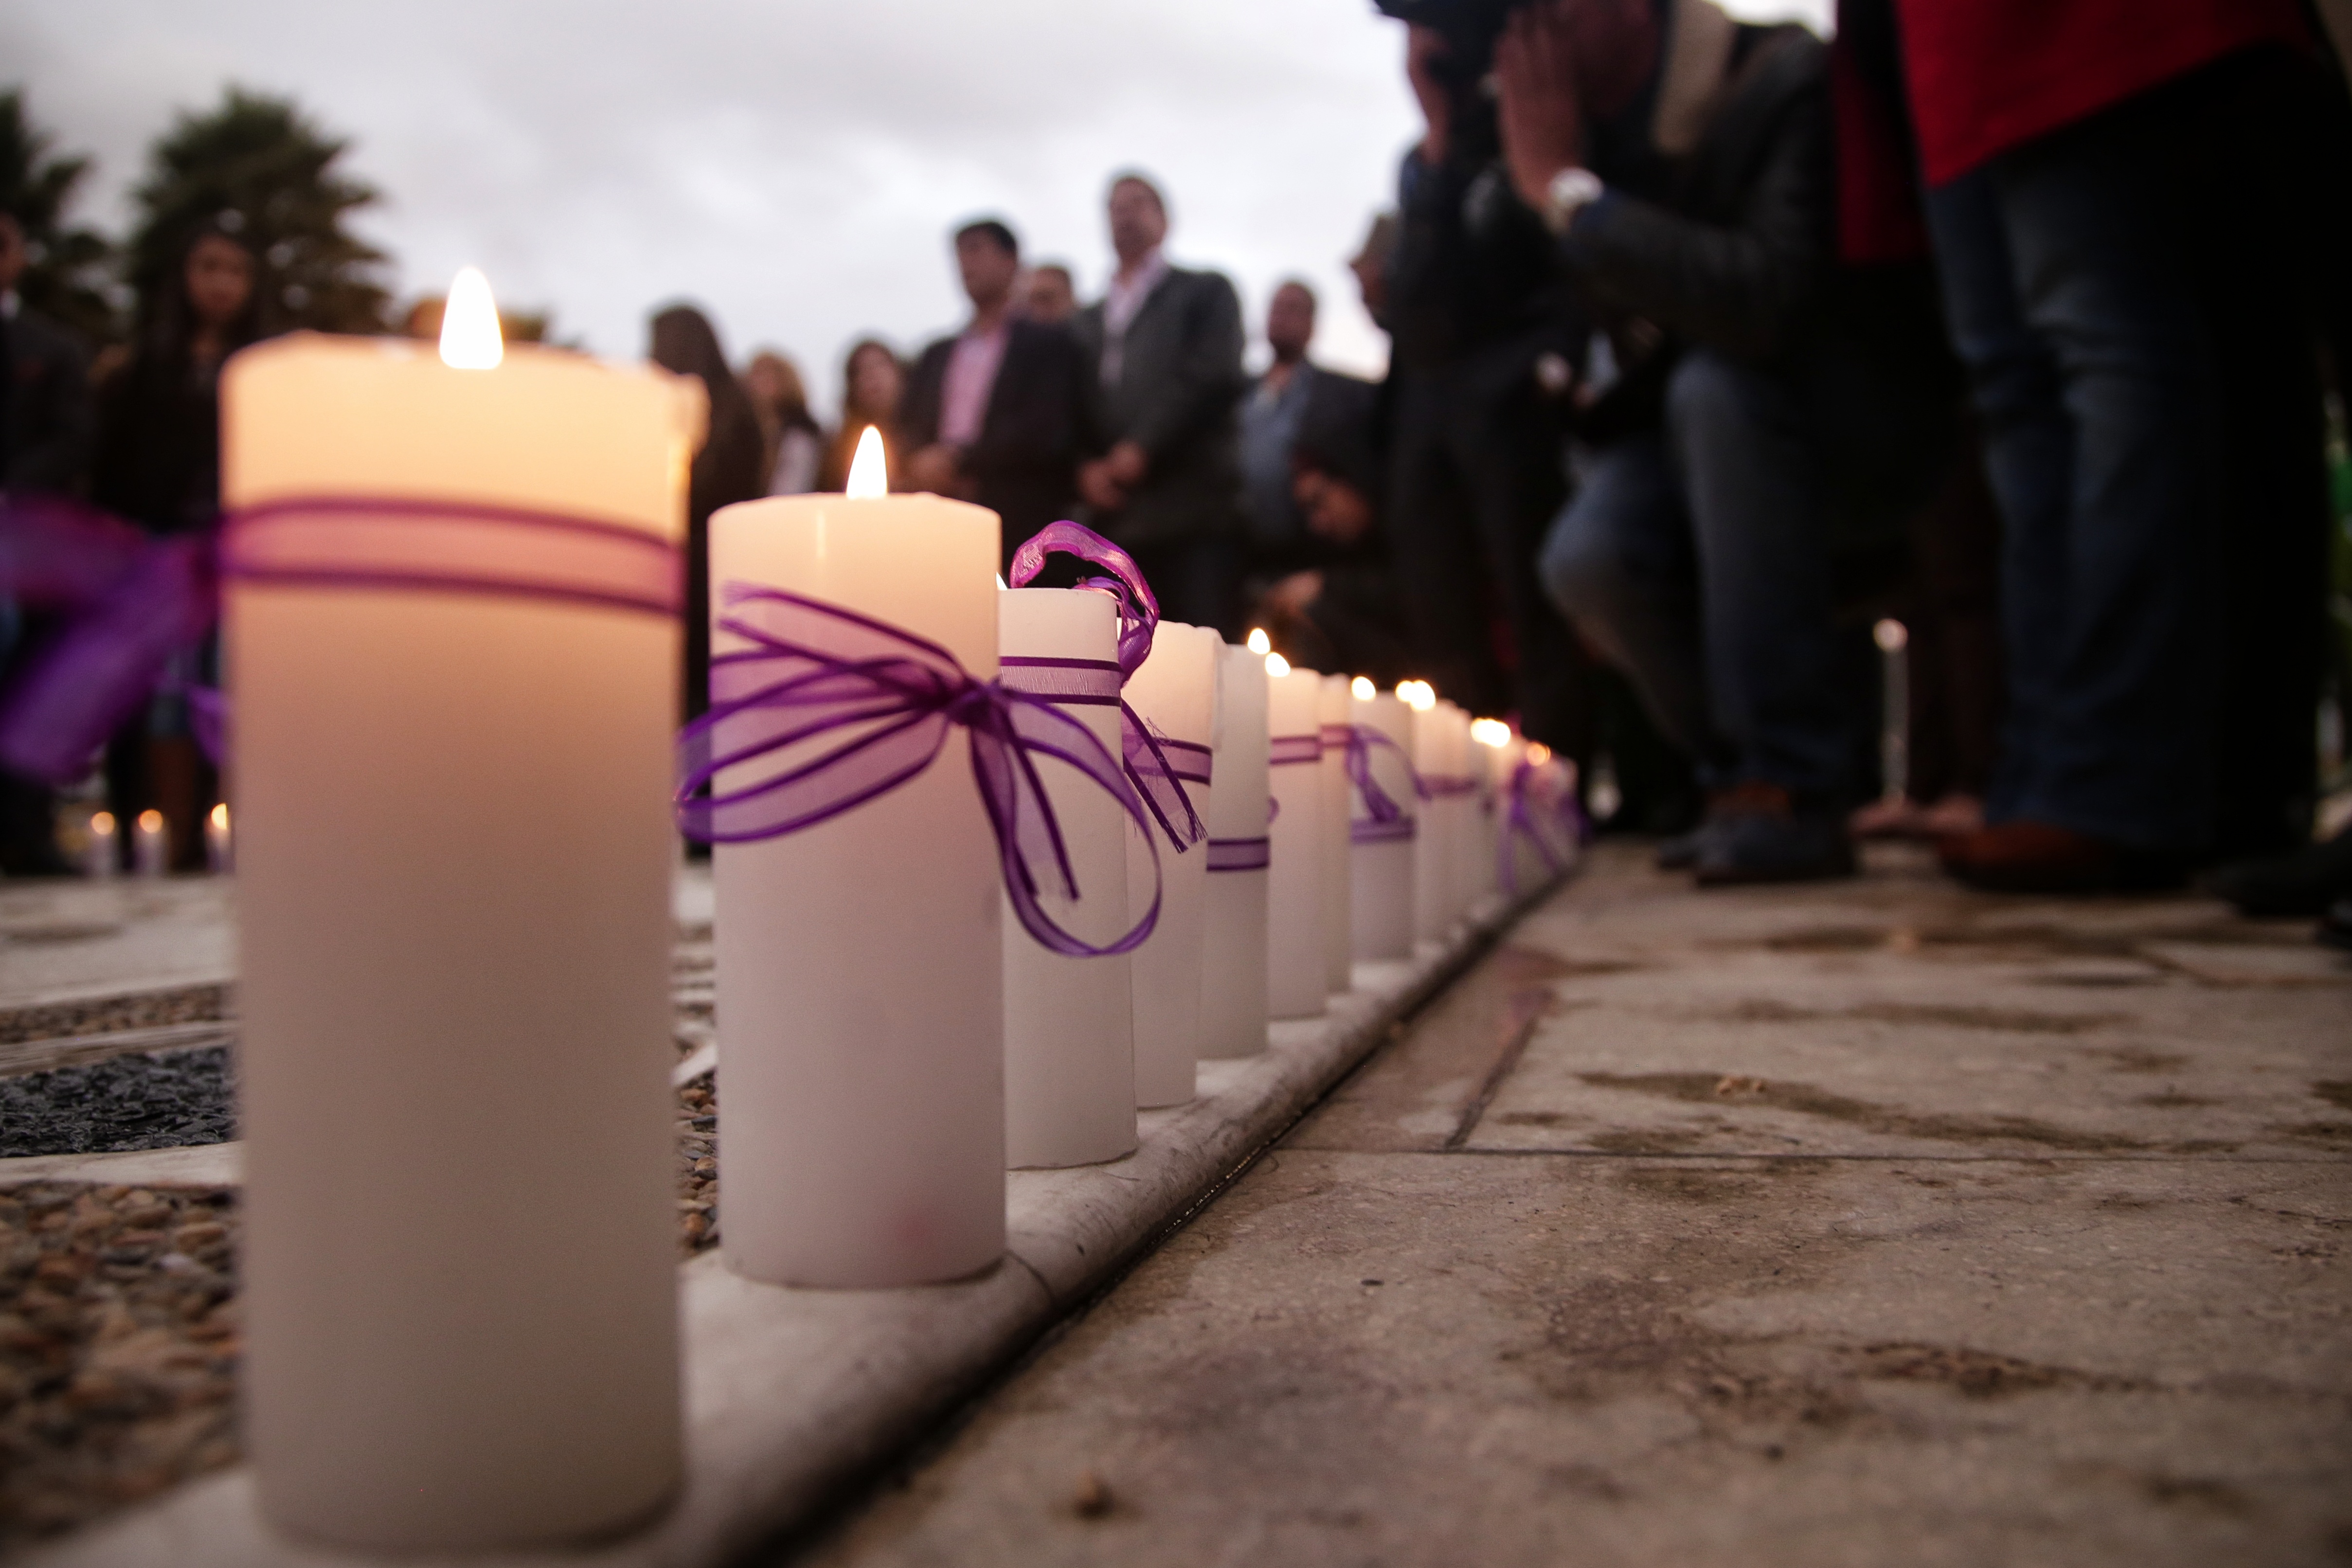 Este domingo 4 de diciembre, a partir de las 9:30 a.m., en el Parque Nacional, Bogotá conmemorará el Día Distrital contra el feminicidio